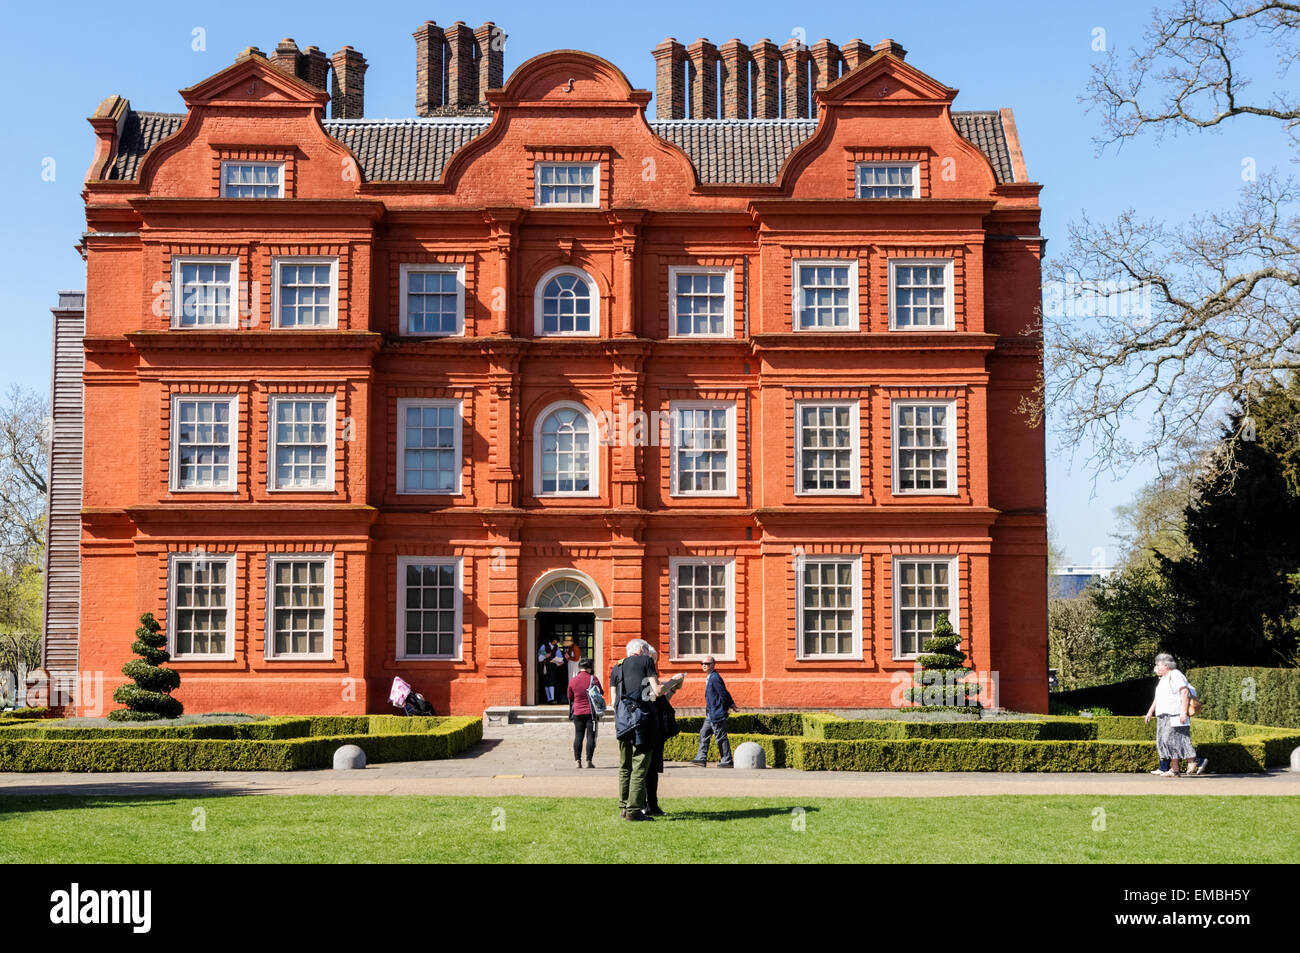 Le palais de Kew datant de 17th ans dans les jardins de Kew, Londres Angleterre Royaume-Uni Banque D'Images